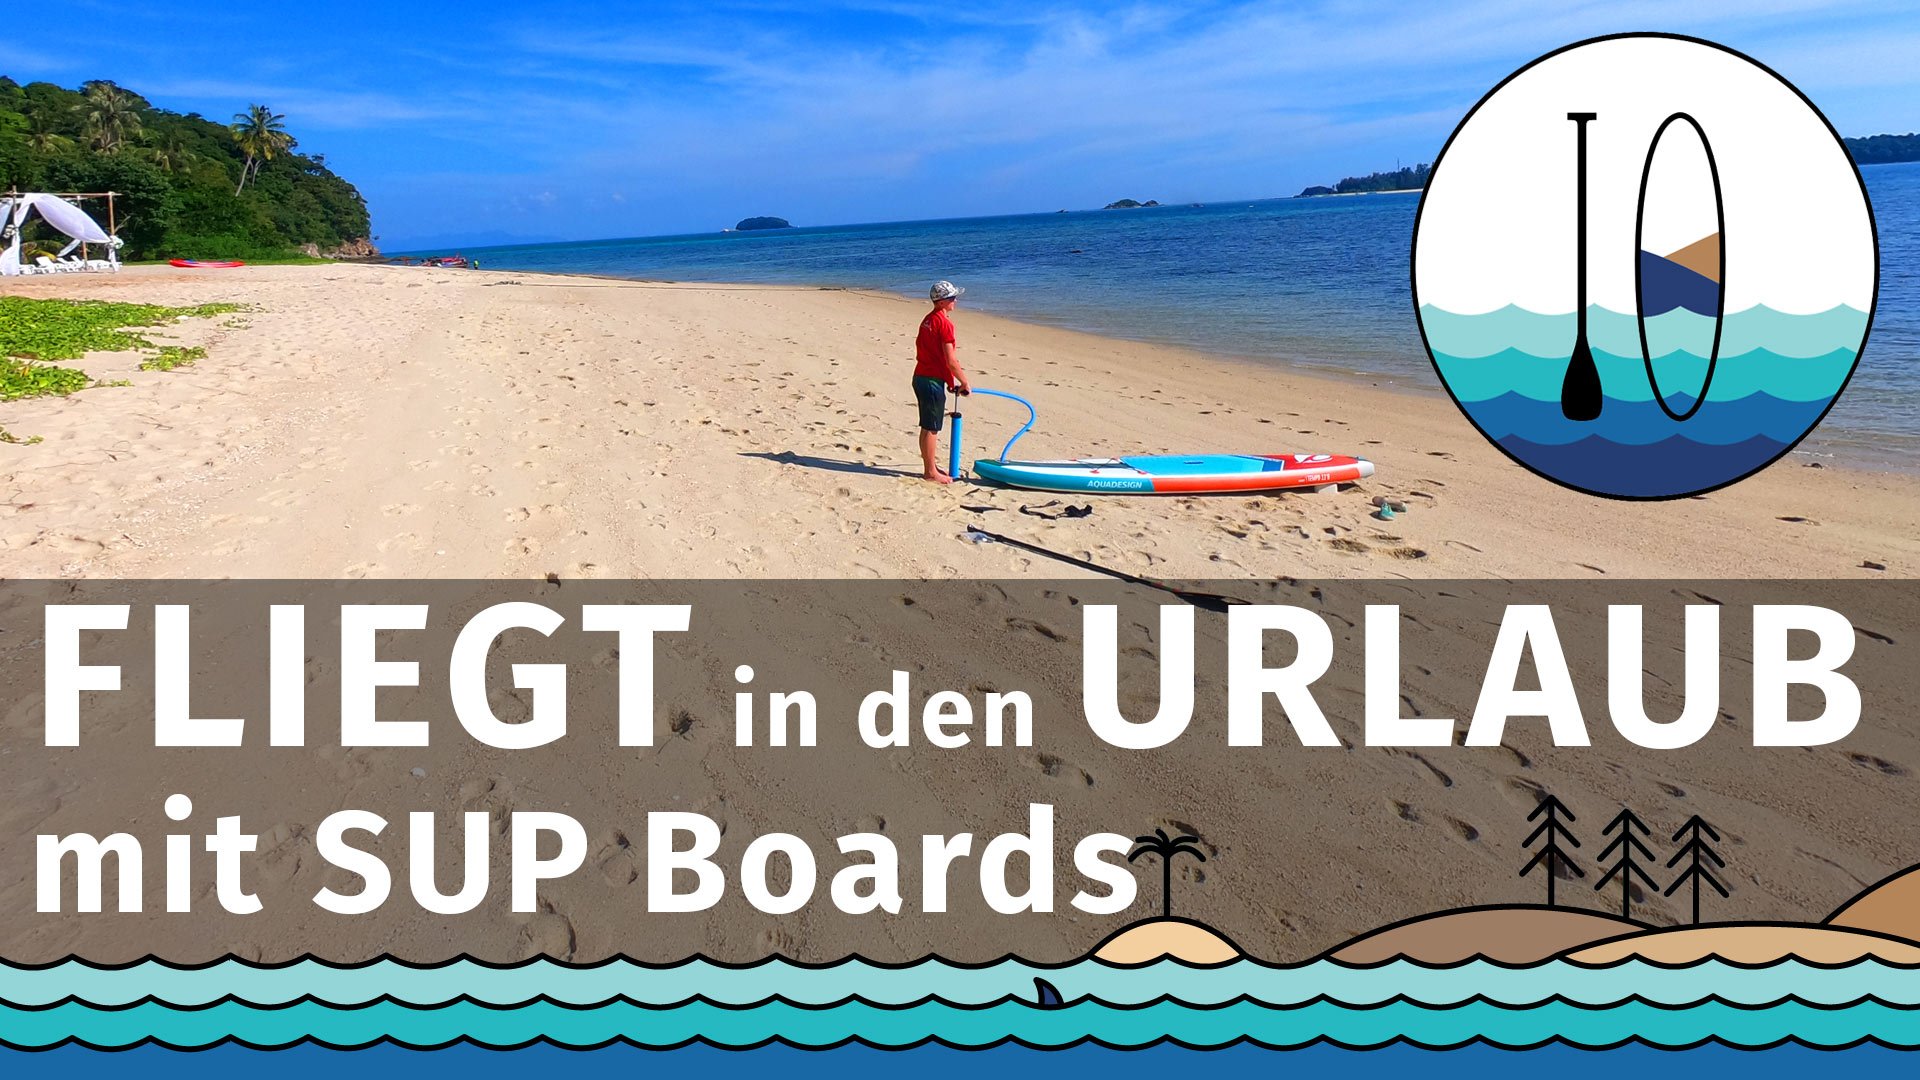 Fliegen Sie mit einem SUP – Stand Up Paddle Board in den Urlaub.